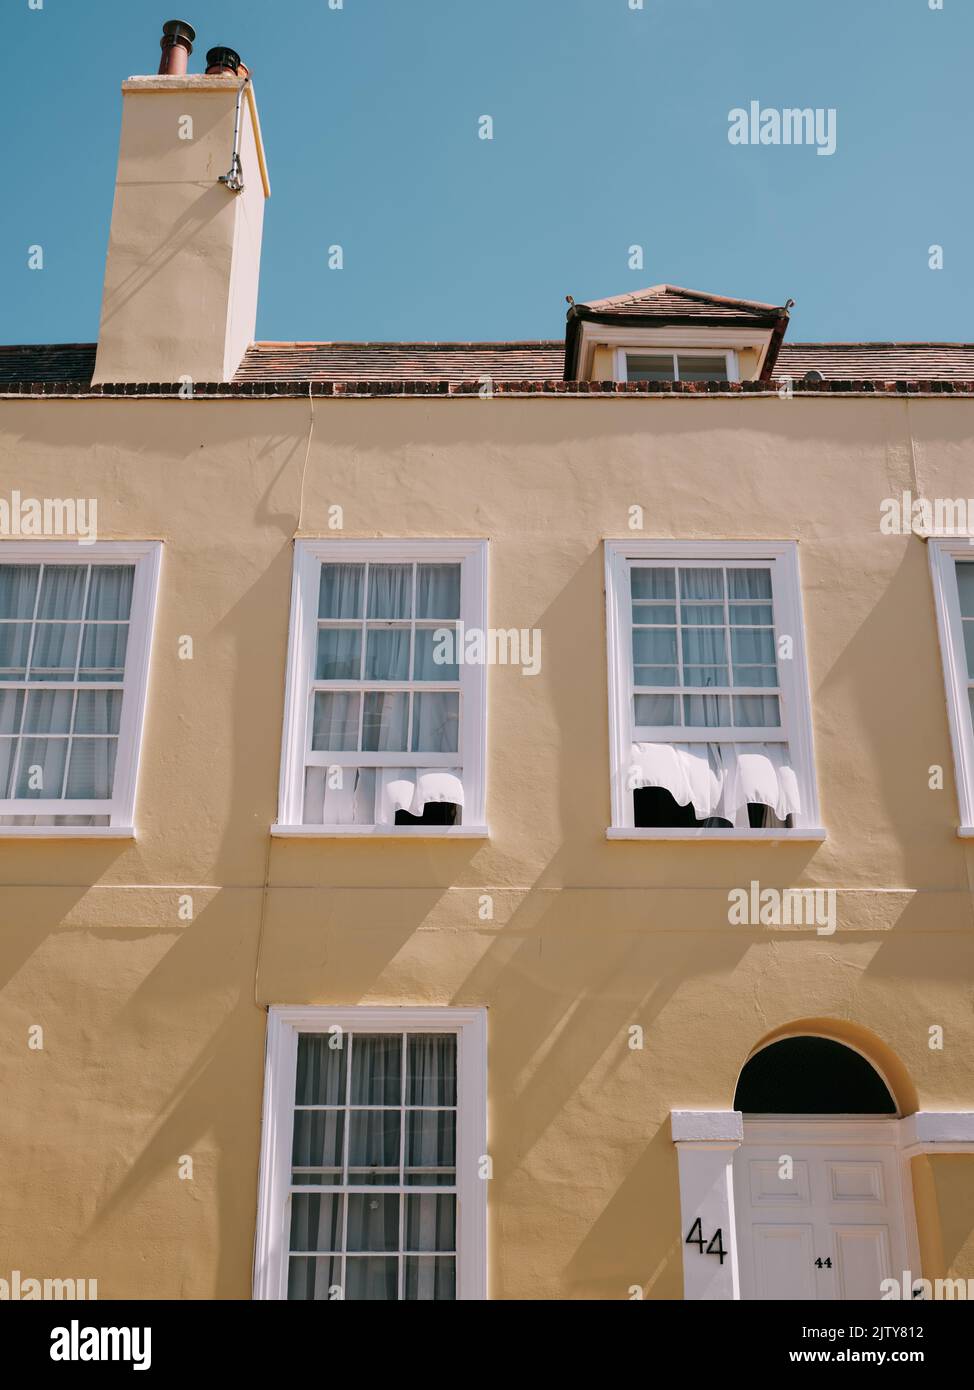 Offene Schiebefenster mit Netzvorhängen, die im Wind wehen - Sommerfenster Lüftung Haus frische Luft Stockfoto